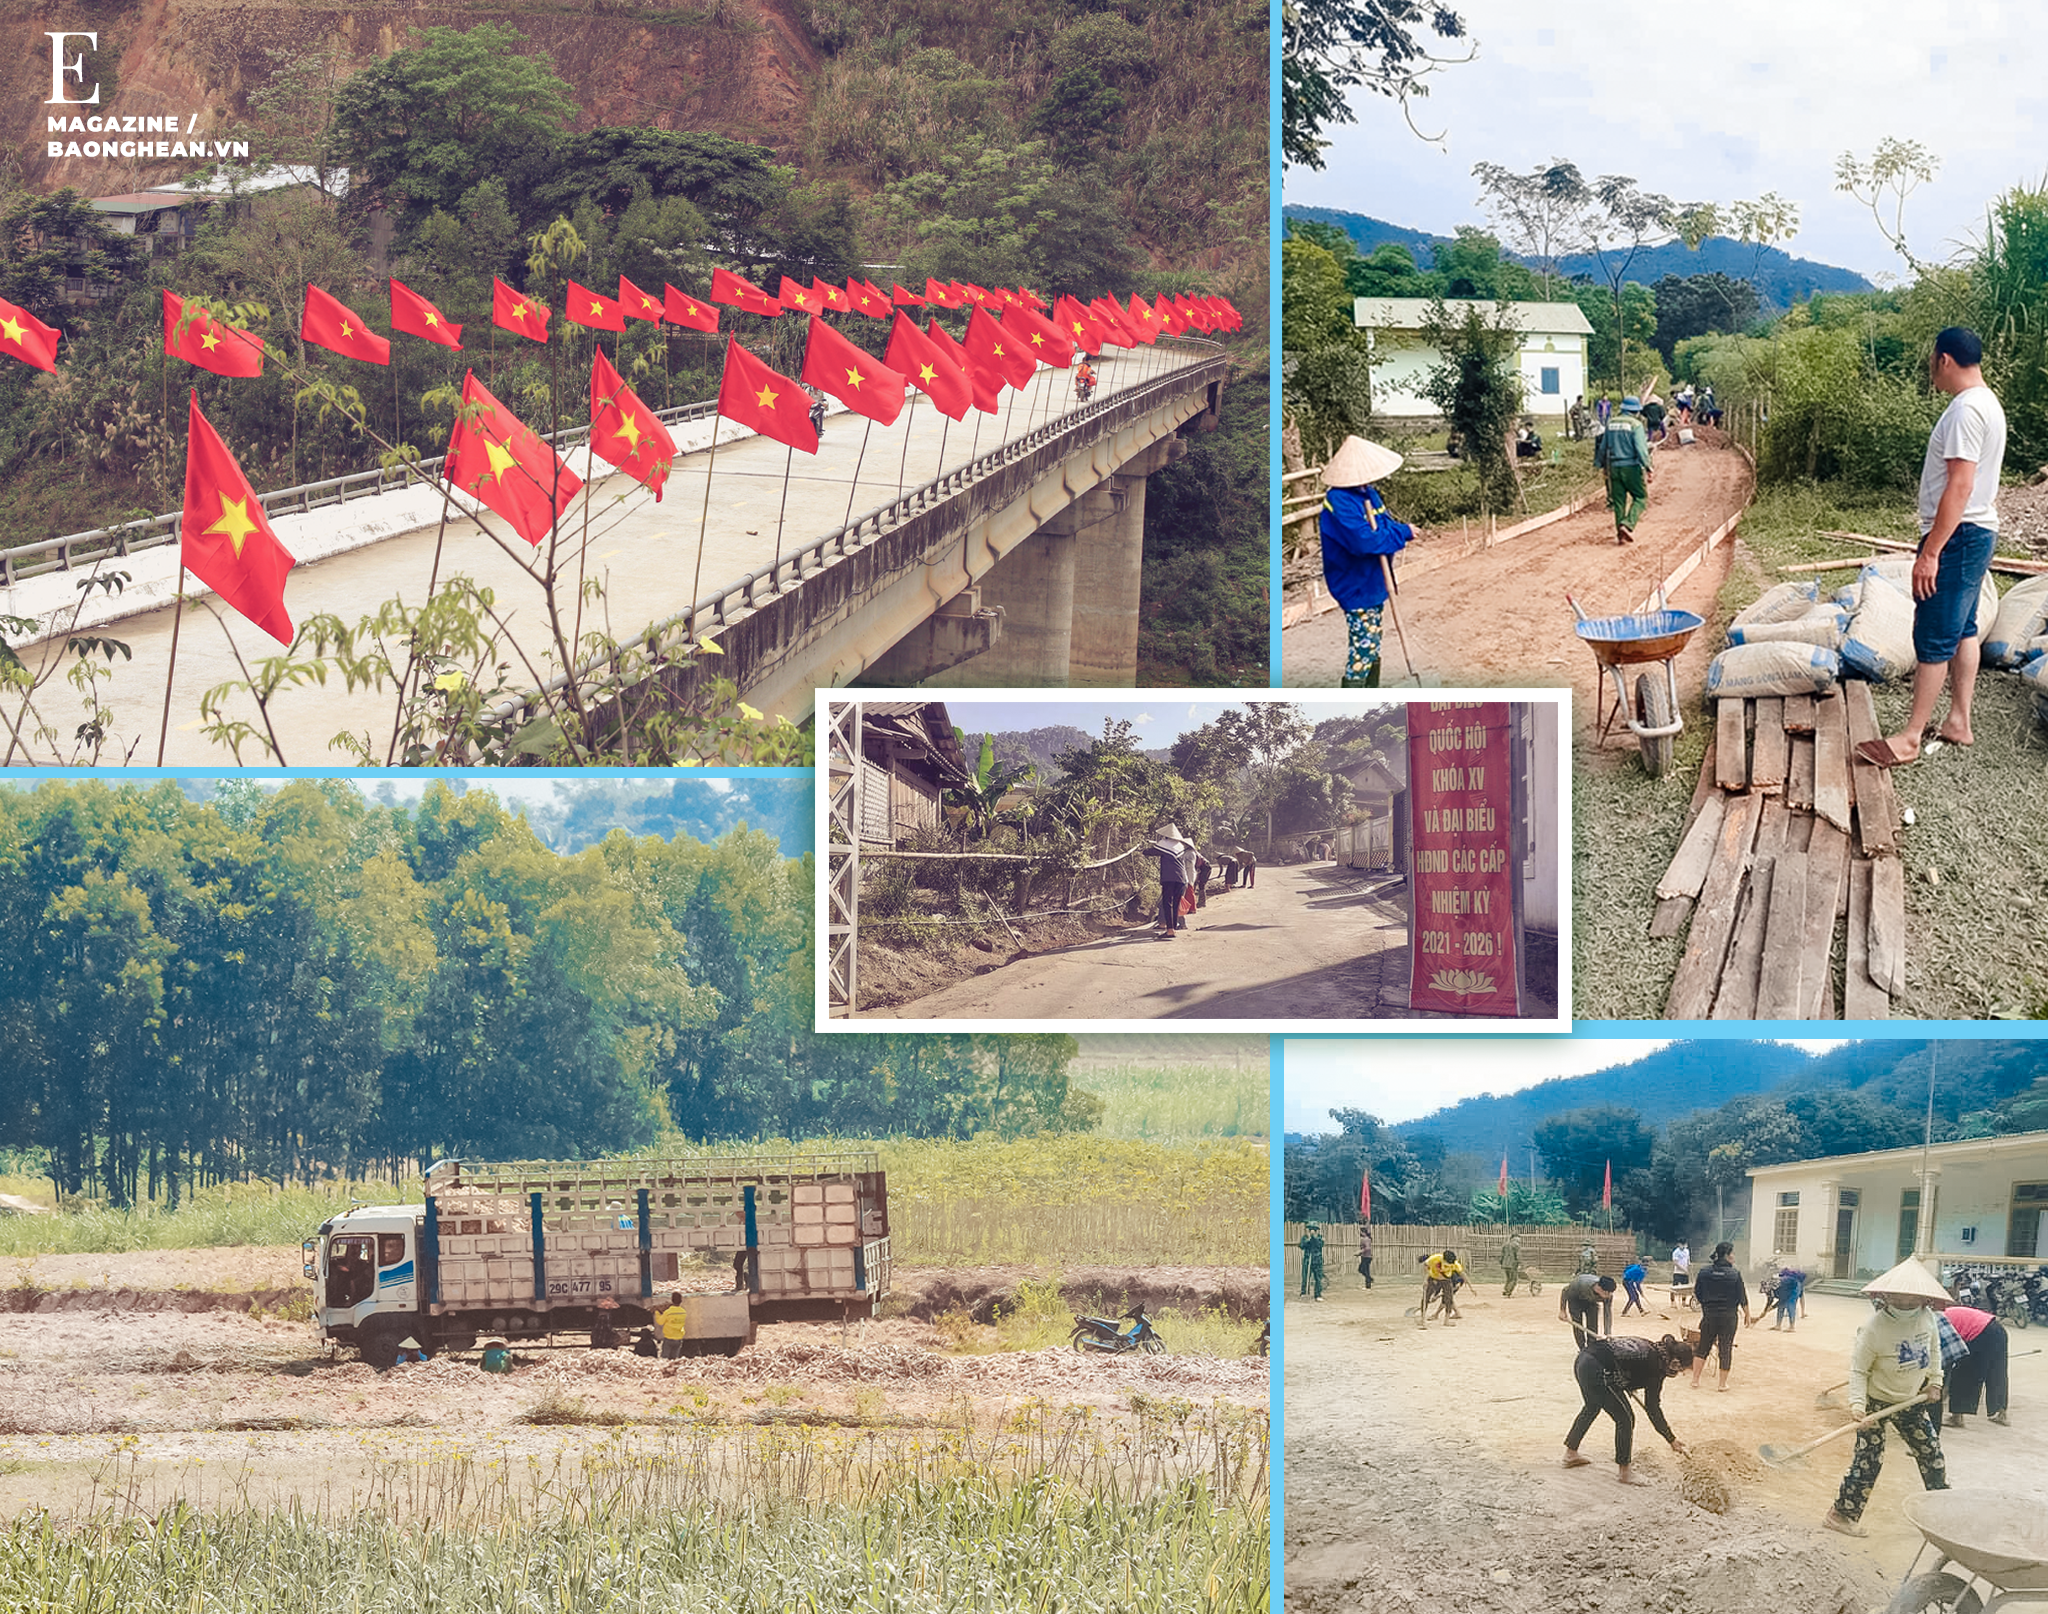 Một góc nông thôn mới xã Tam Quang; Đường nội đồng được chú trọng đầu tư nâng cấp, các loại xe có trọng tải lớn ra tận đồng để thu mua sản phẩm cho bà con; Người dân góp công, góp sức xây dựng nông thôn mới.